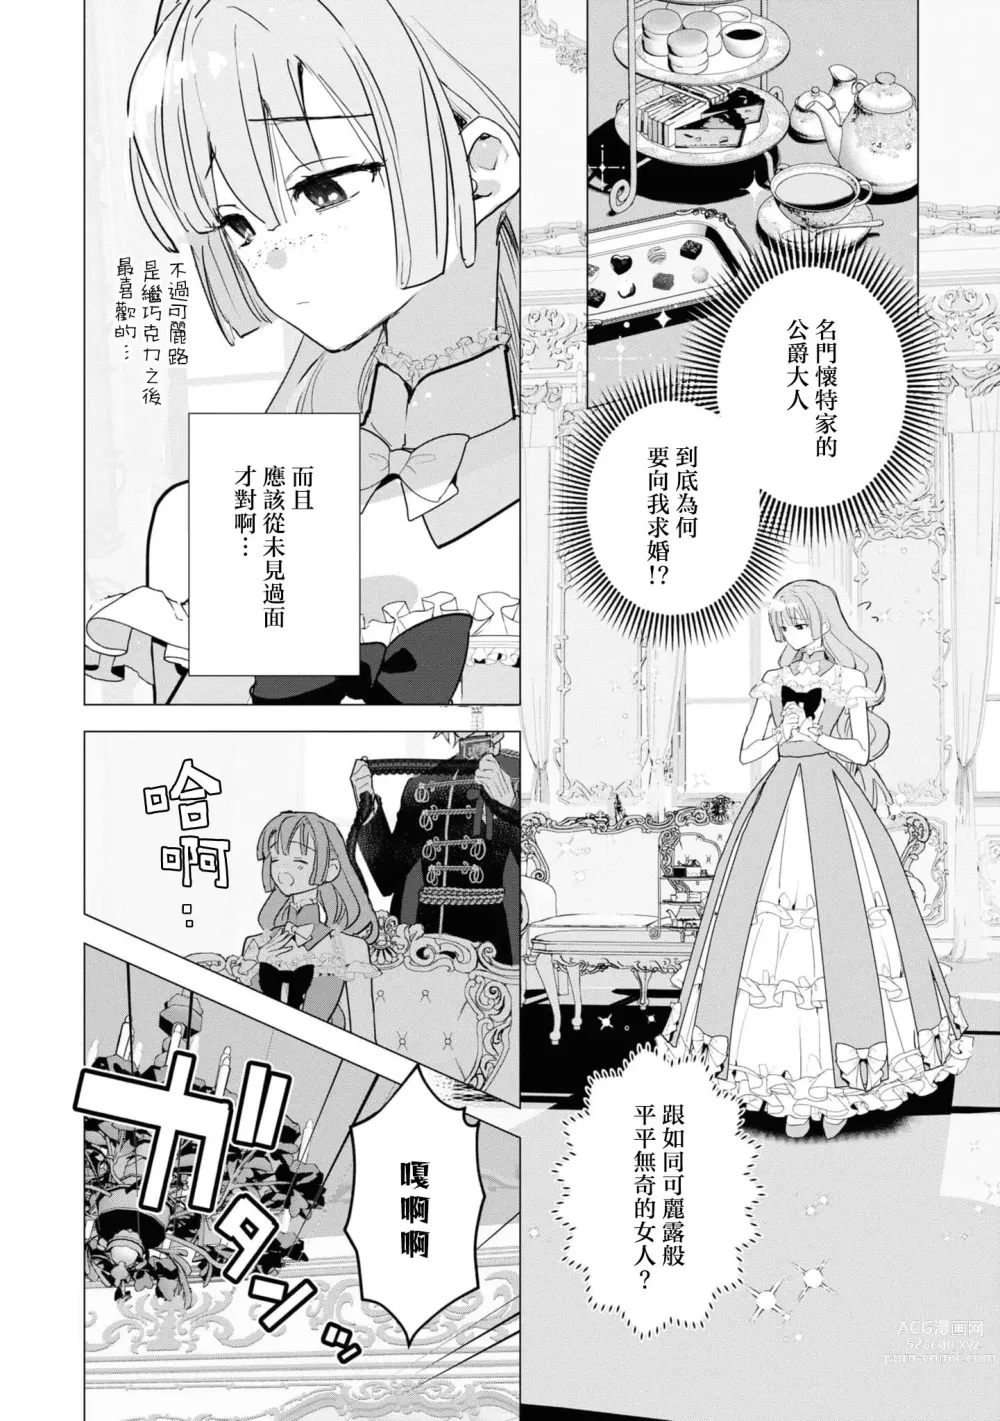 Page 3 of manga 呼吸是甜蜜巧克力